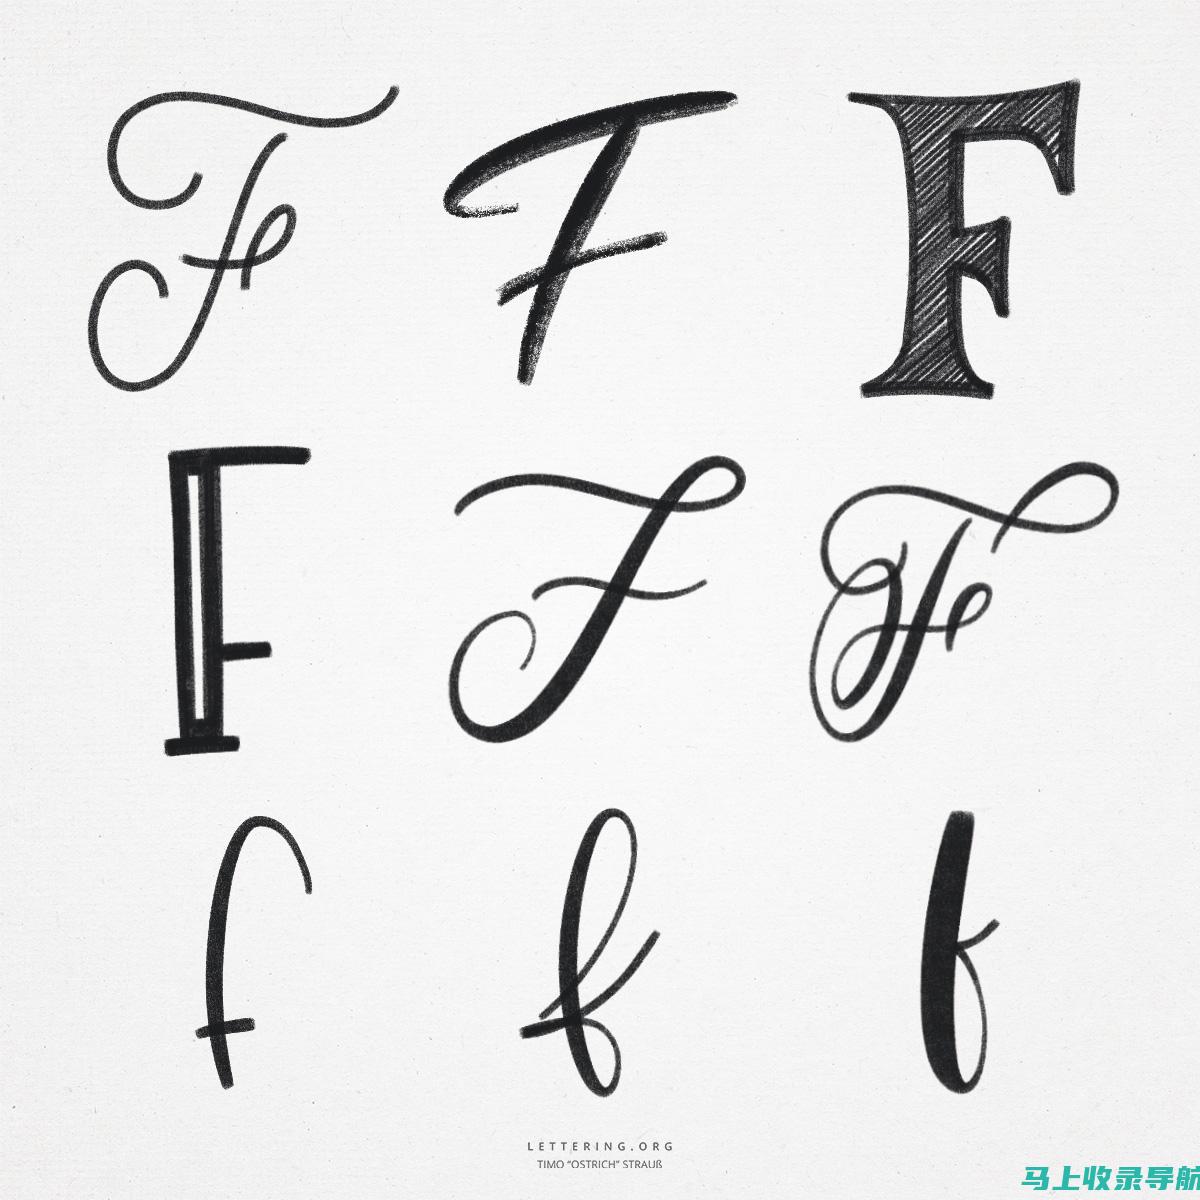 Font Fabric- 提供免费和付费字体